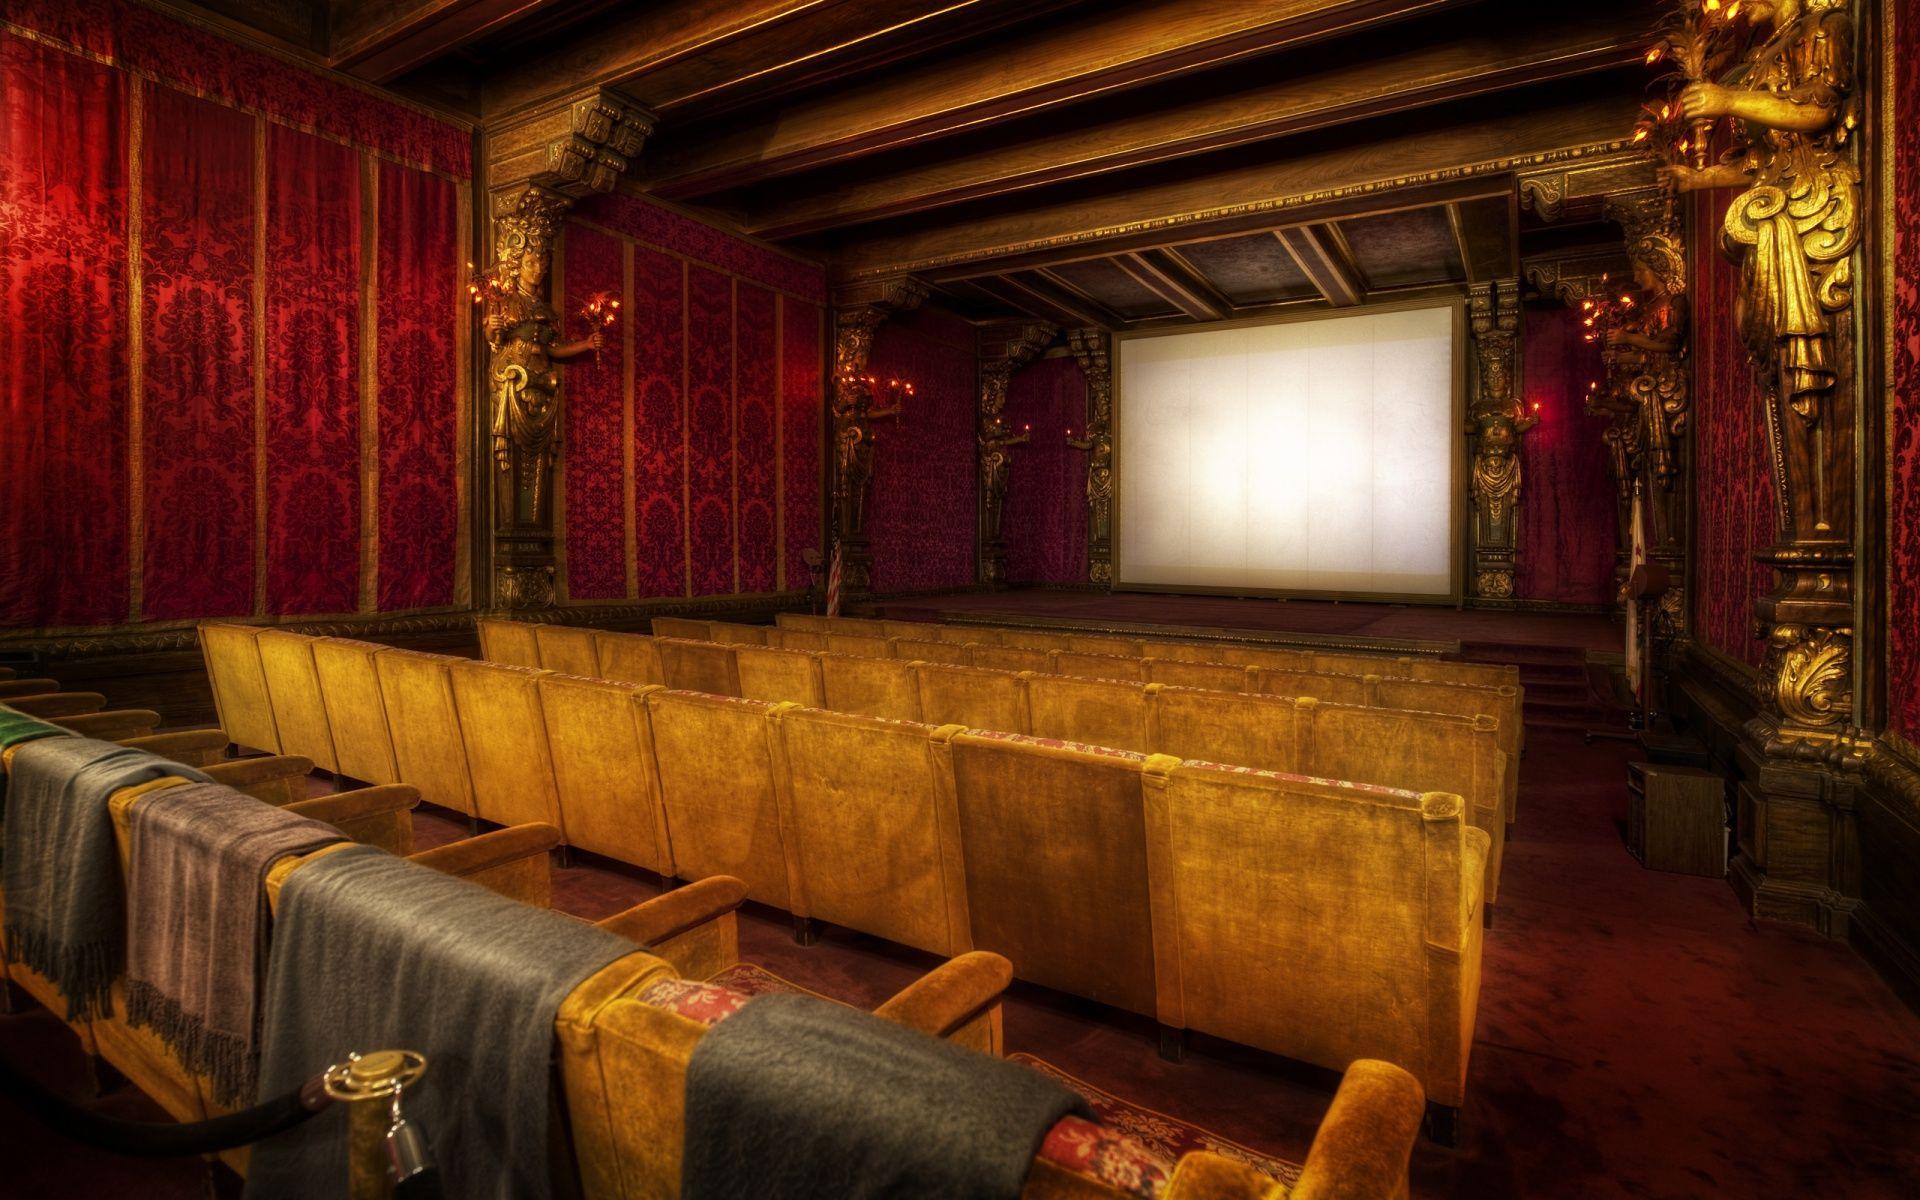 عکس سالن تئاتر کوچک به سبک قدیمی و کلاسیک 